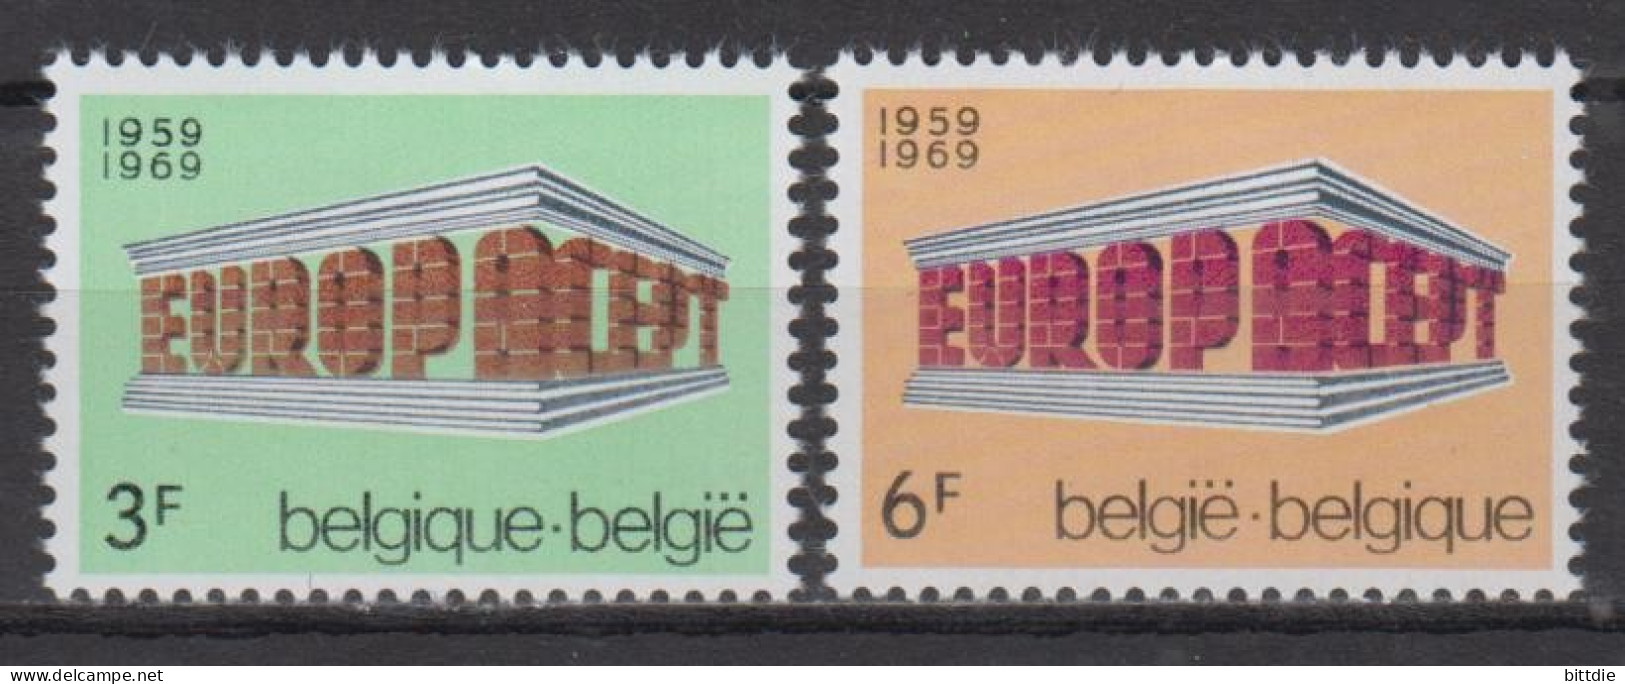 Europa/Cept, Belgien  1546/47 , Xx  (S 1755) - 1969